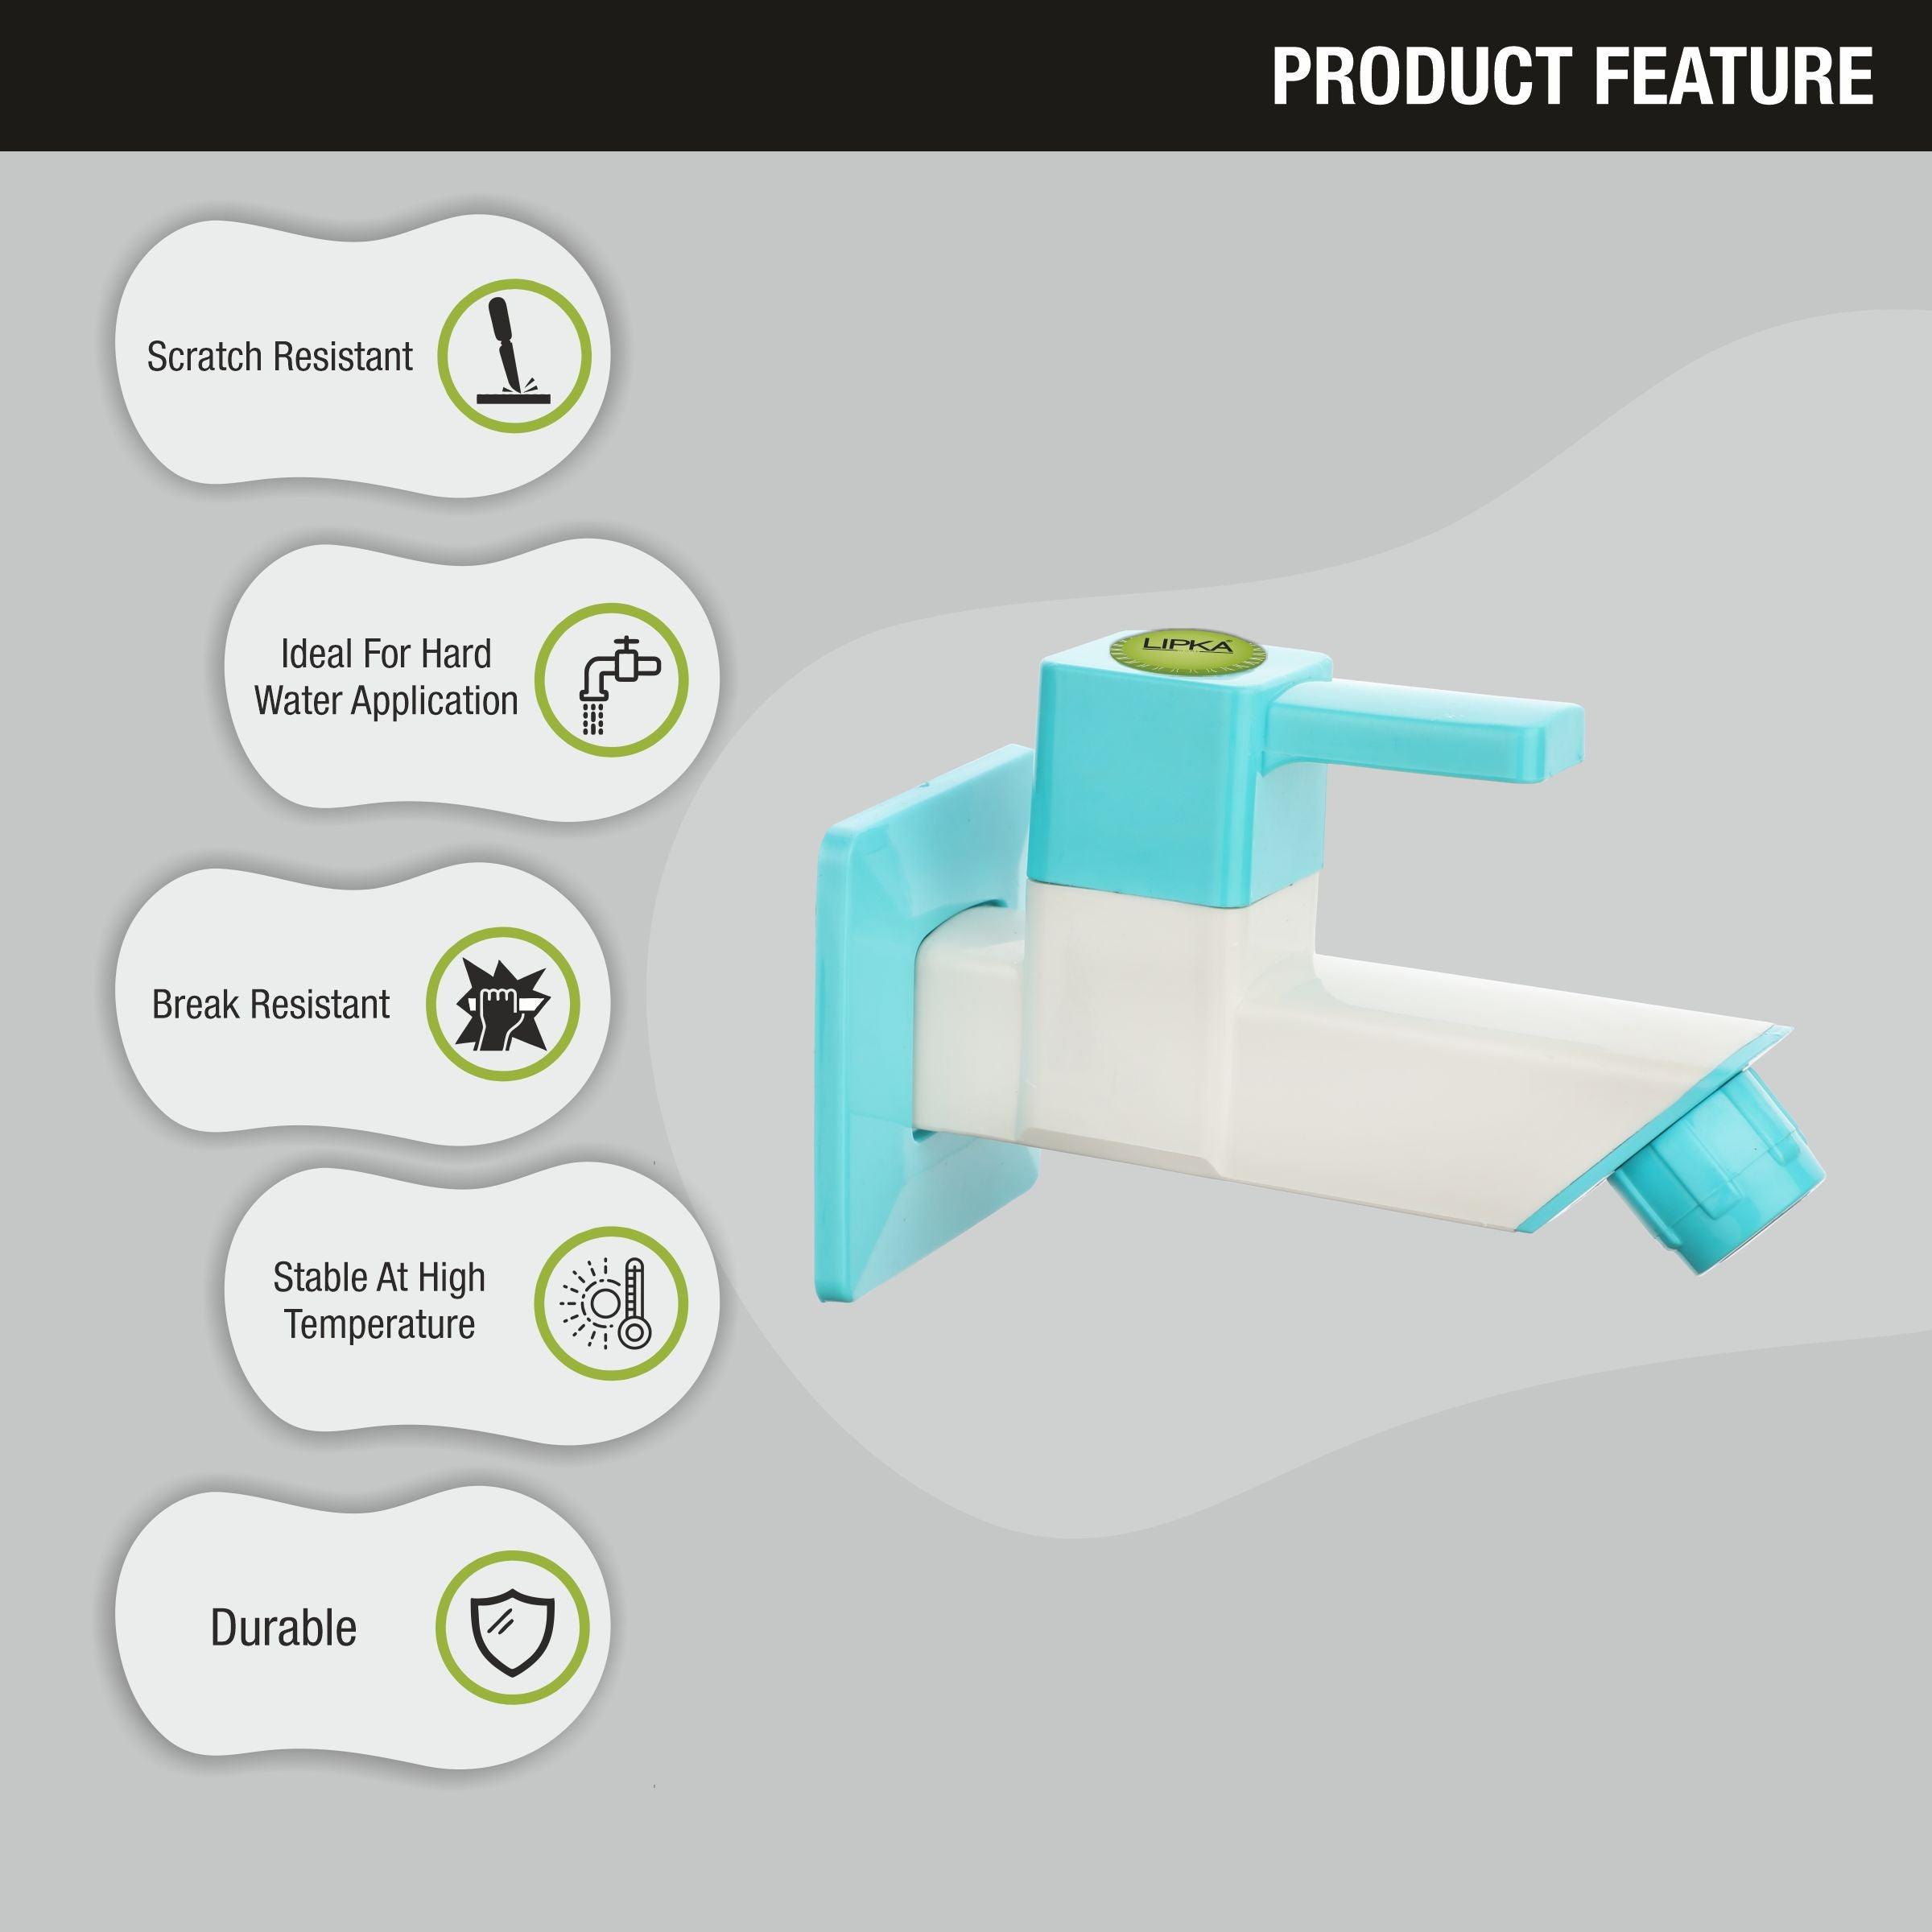 Aura Bib Tap PTMT Faucet features